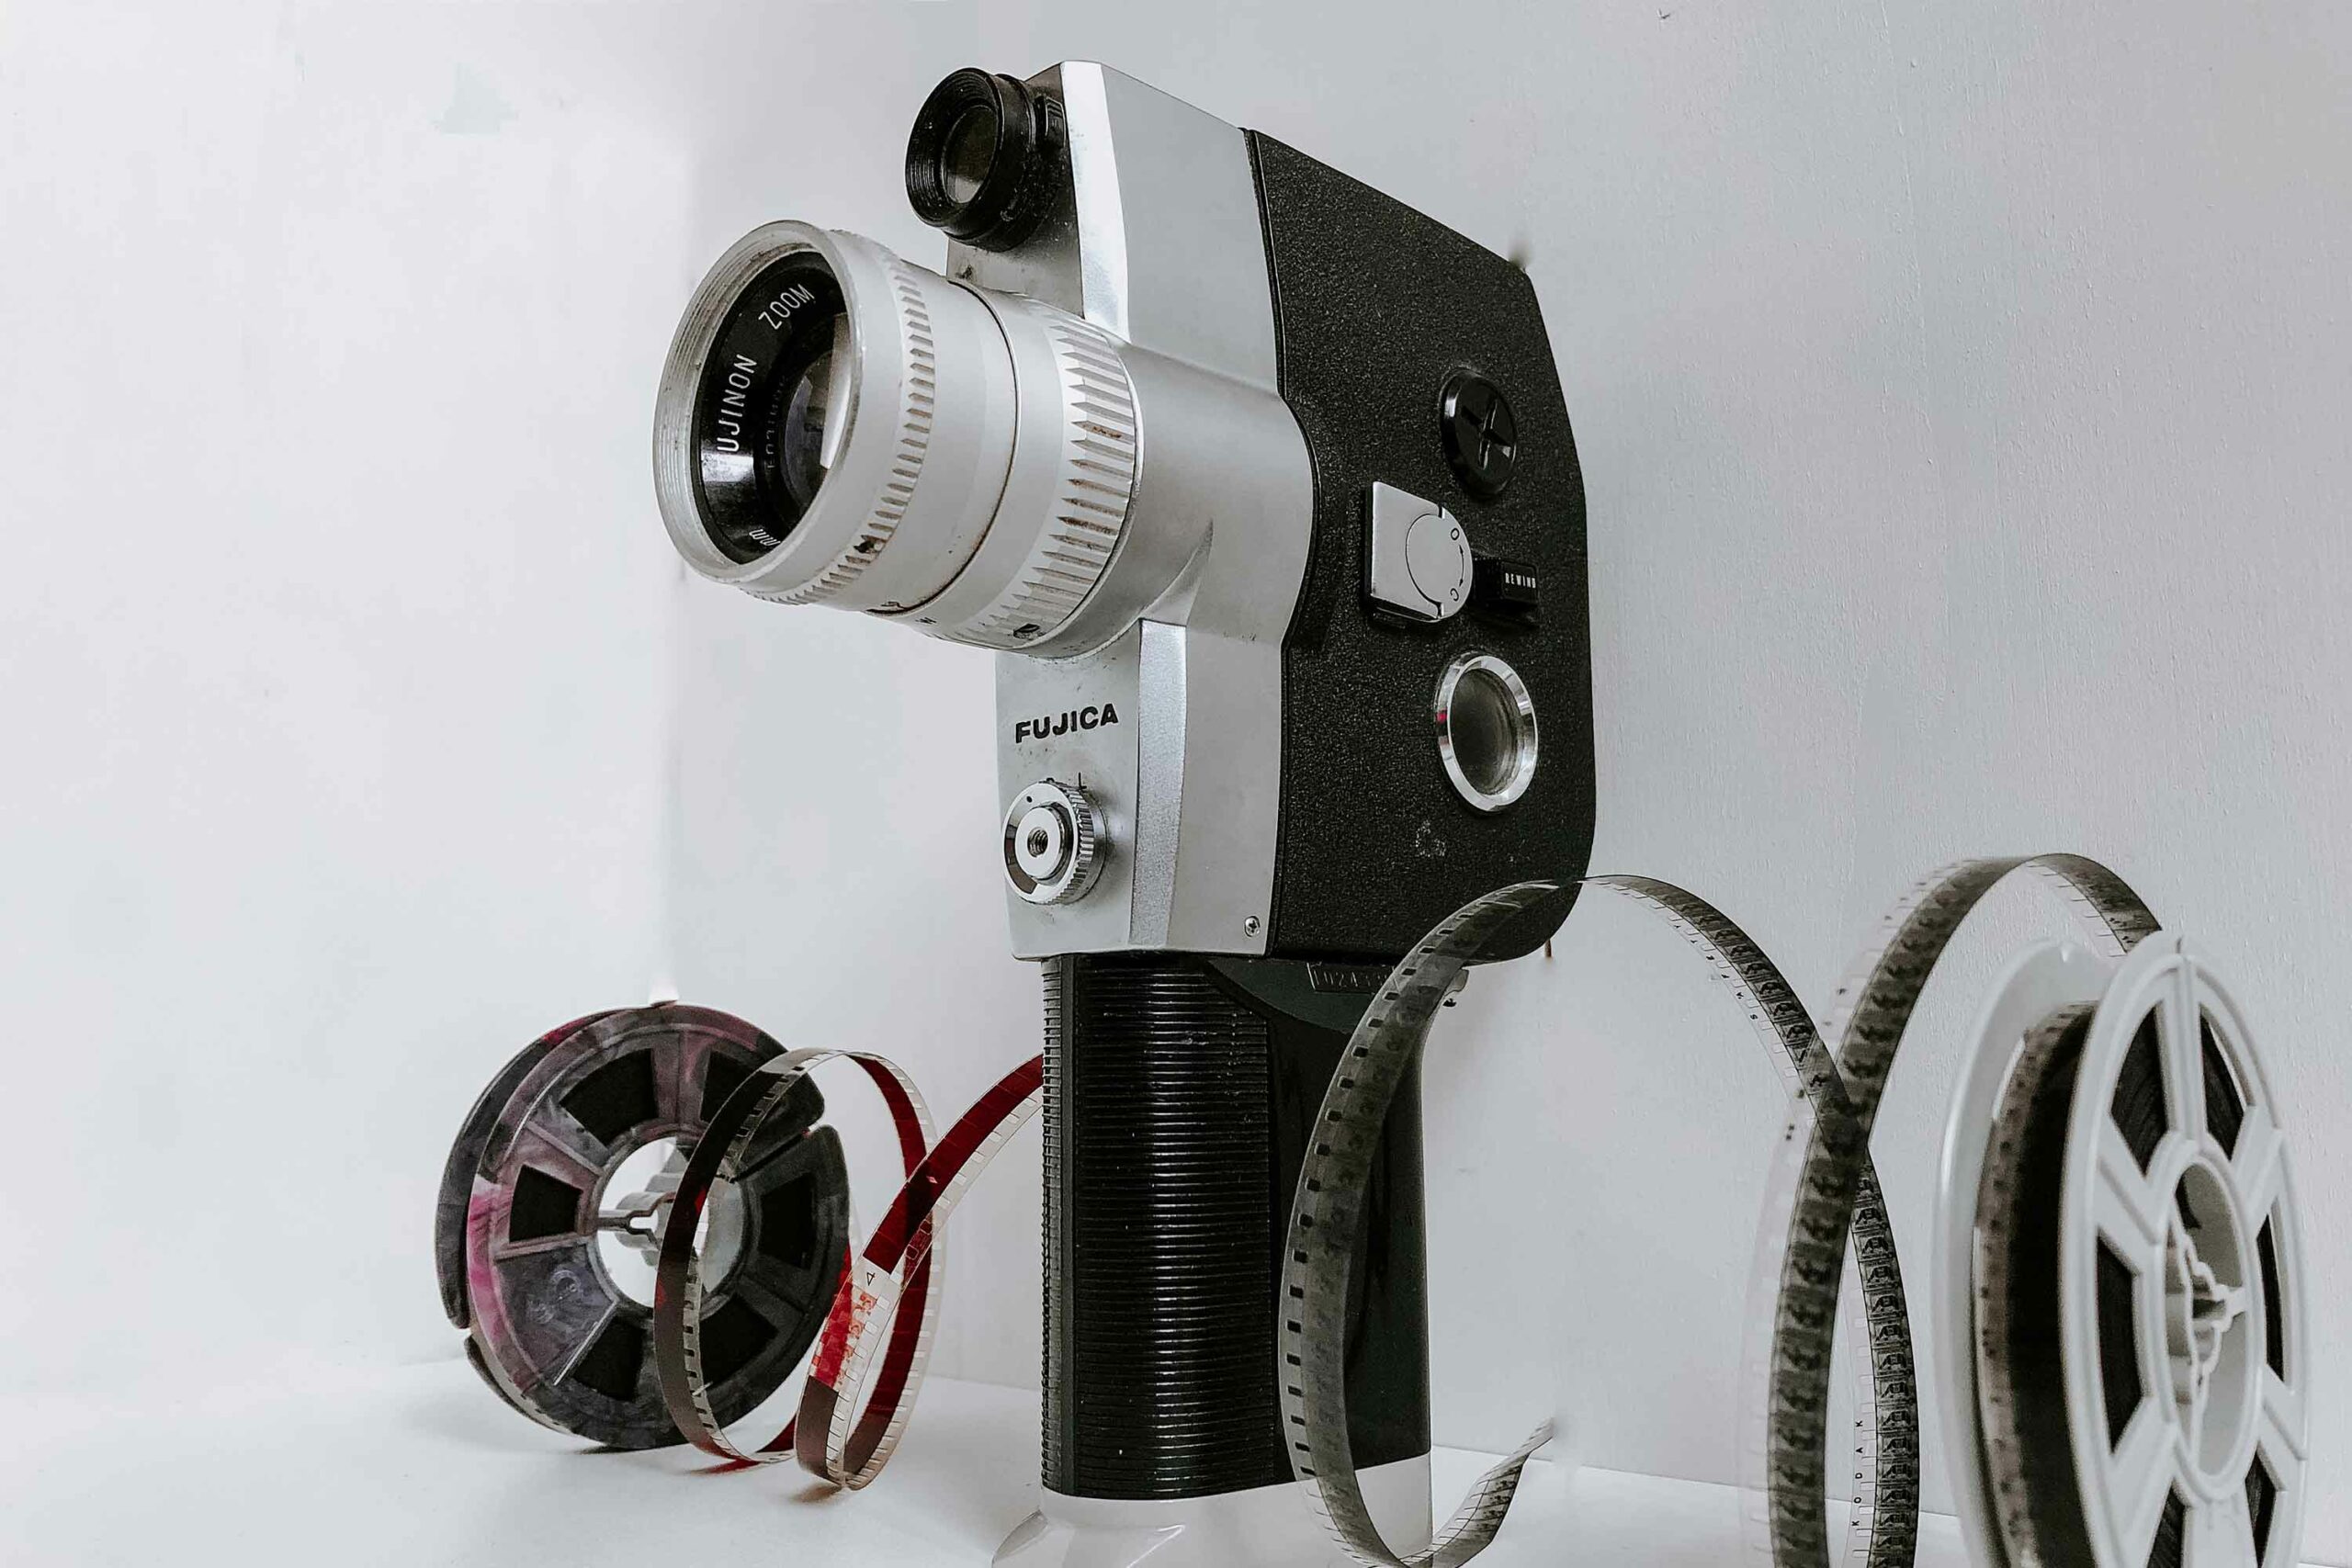 Super 8 Film-Kamera/ Film-Format, Filmkamera